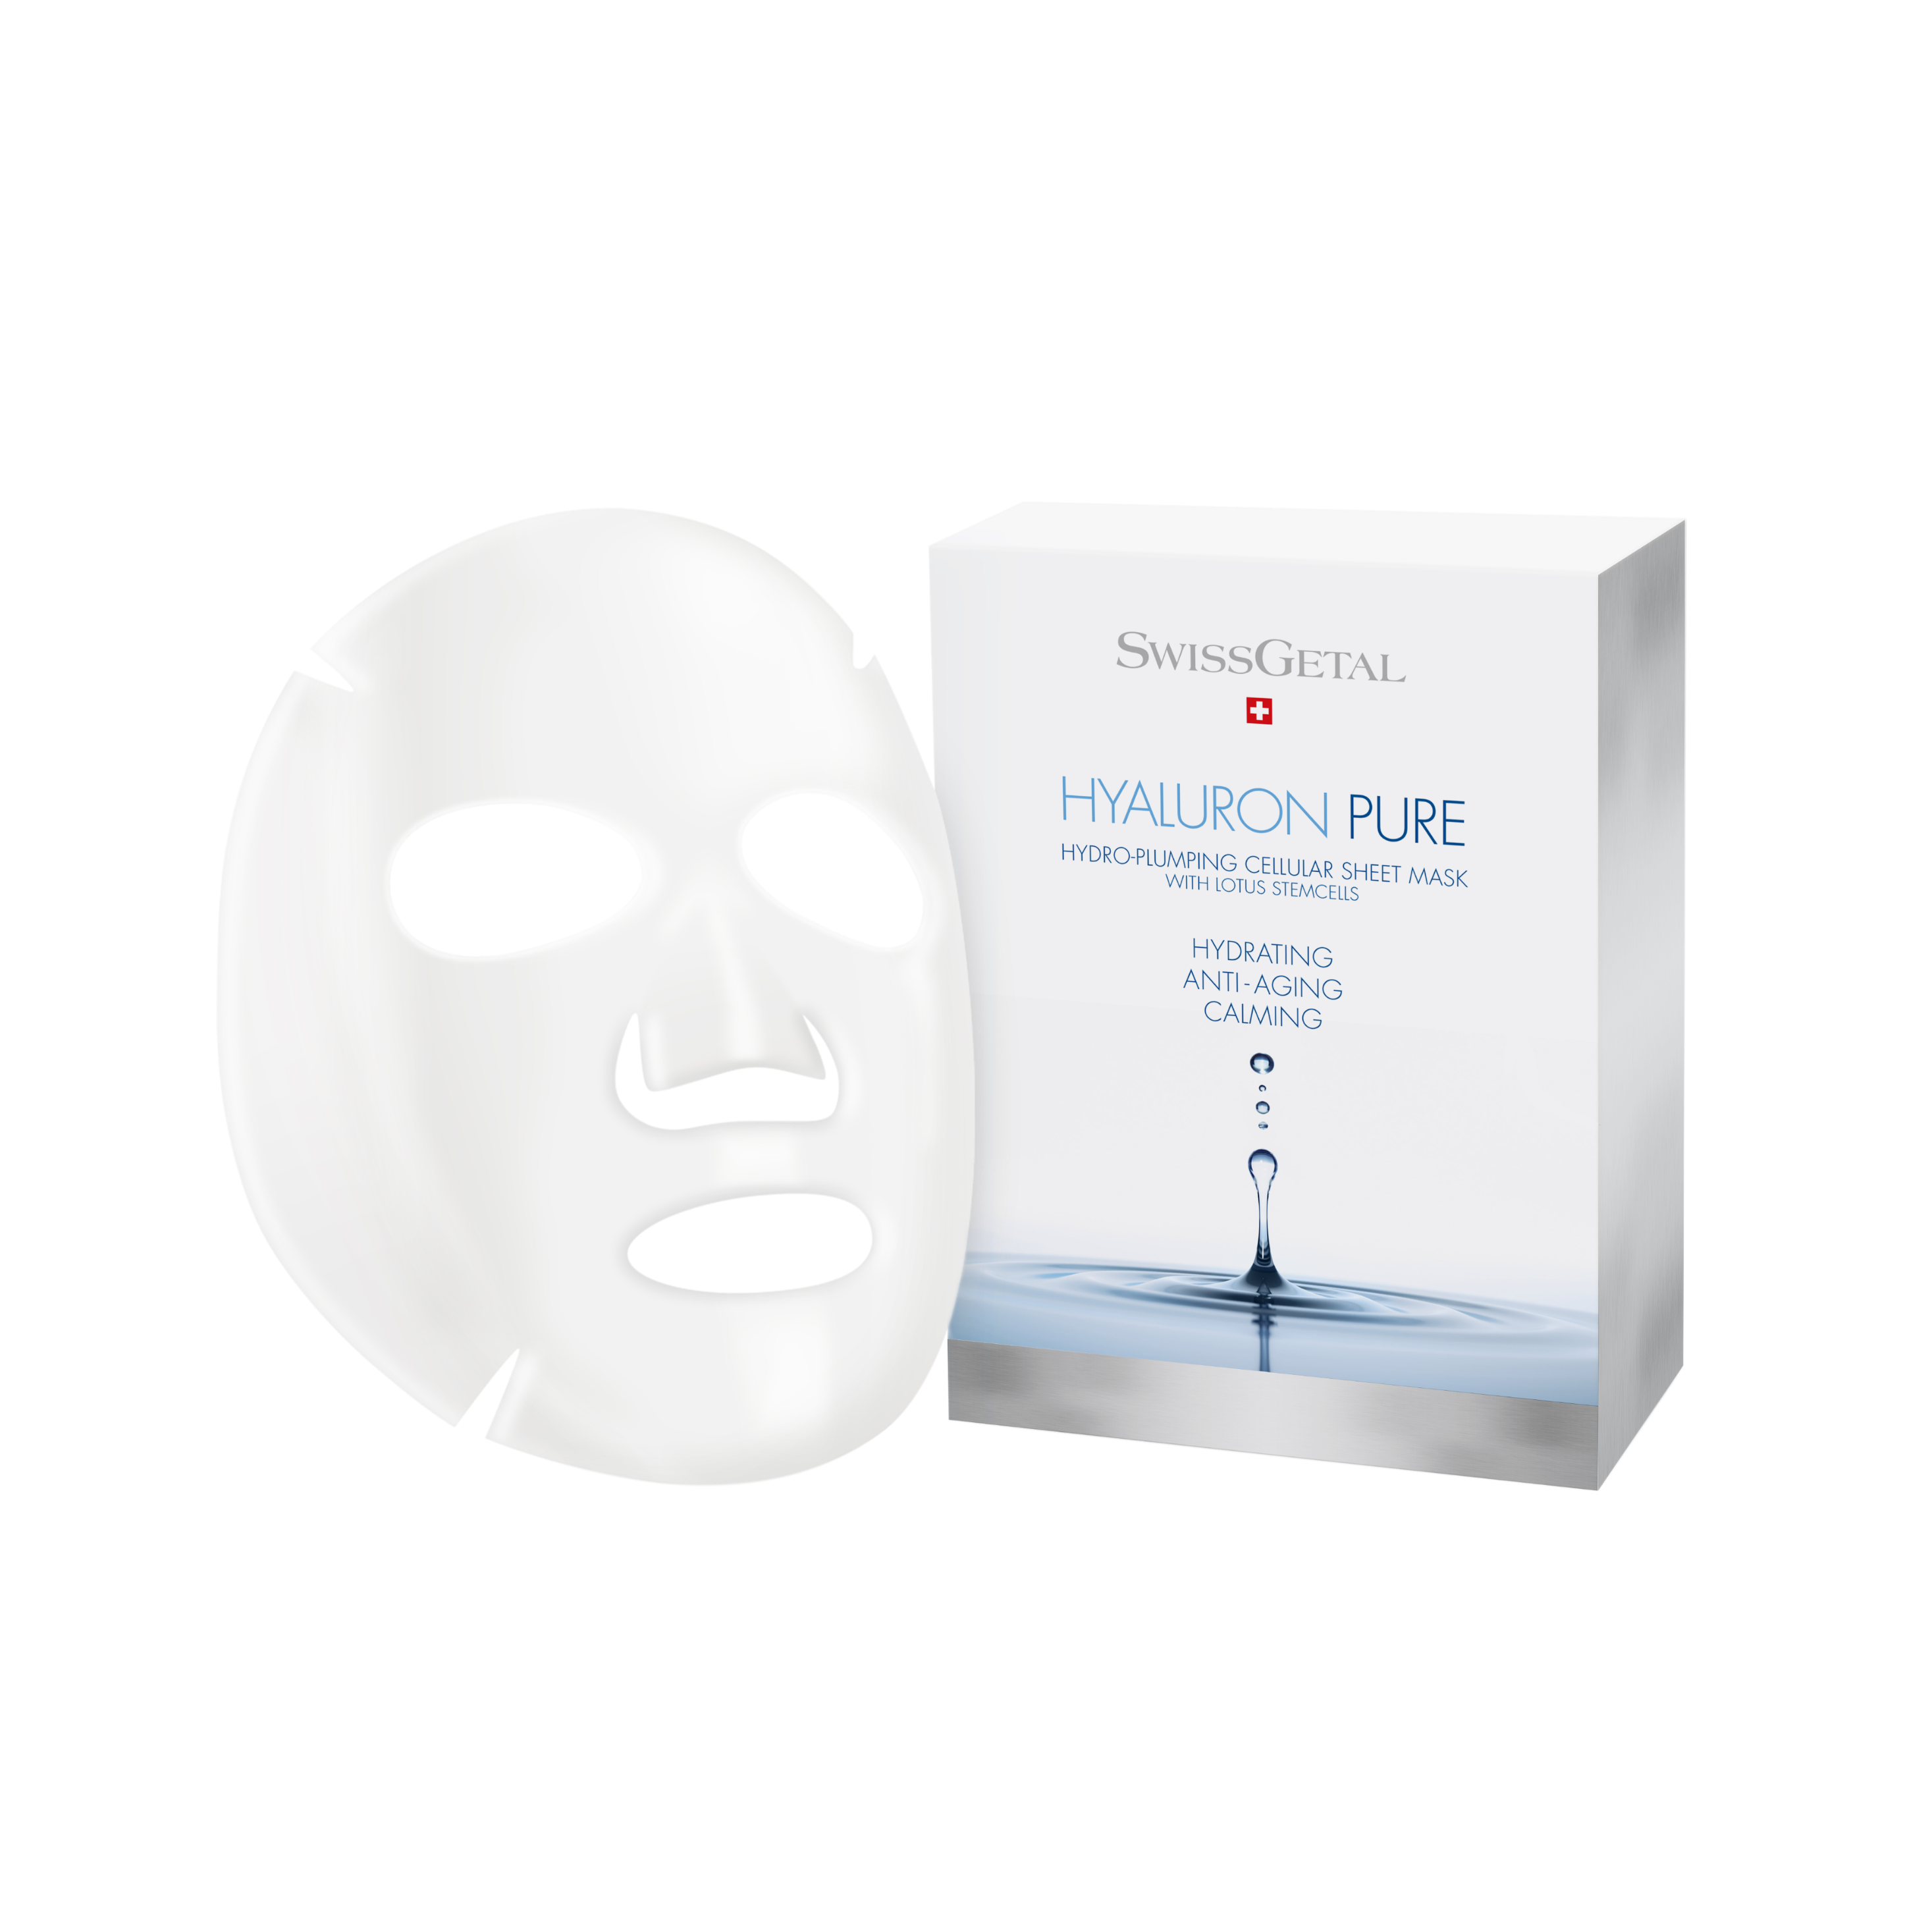 Увлажняющая тканевая маска для лица Hydro Plumping Cellular Sheet Mask Рег. №: H-910